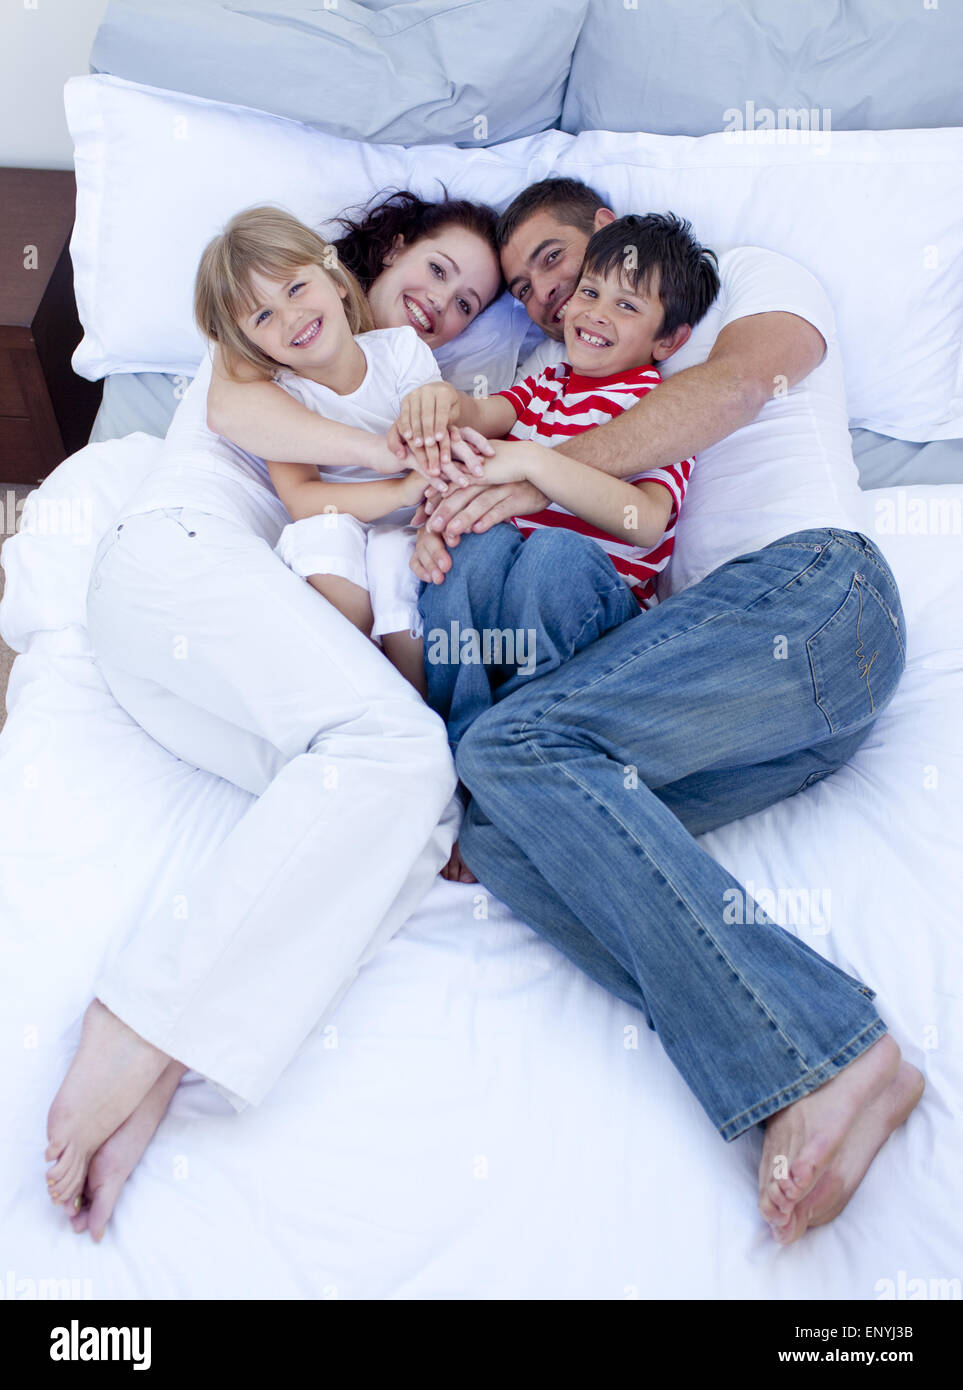 Семейная фотосессия на кровати